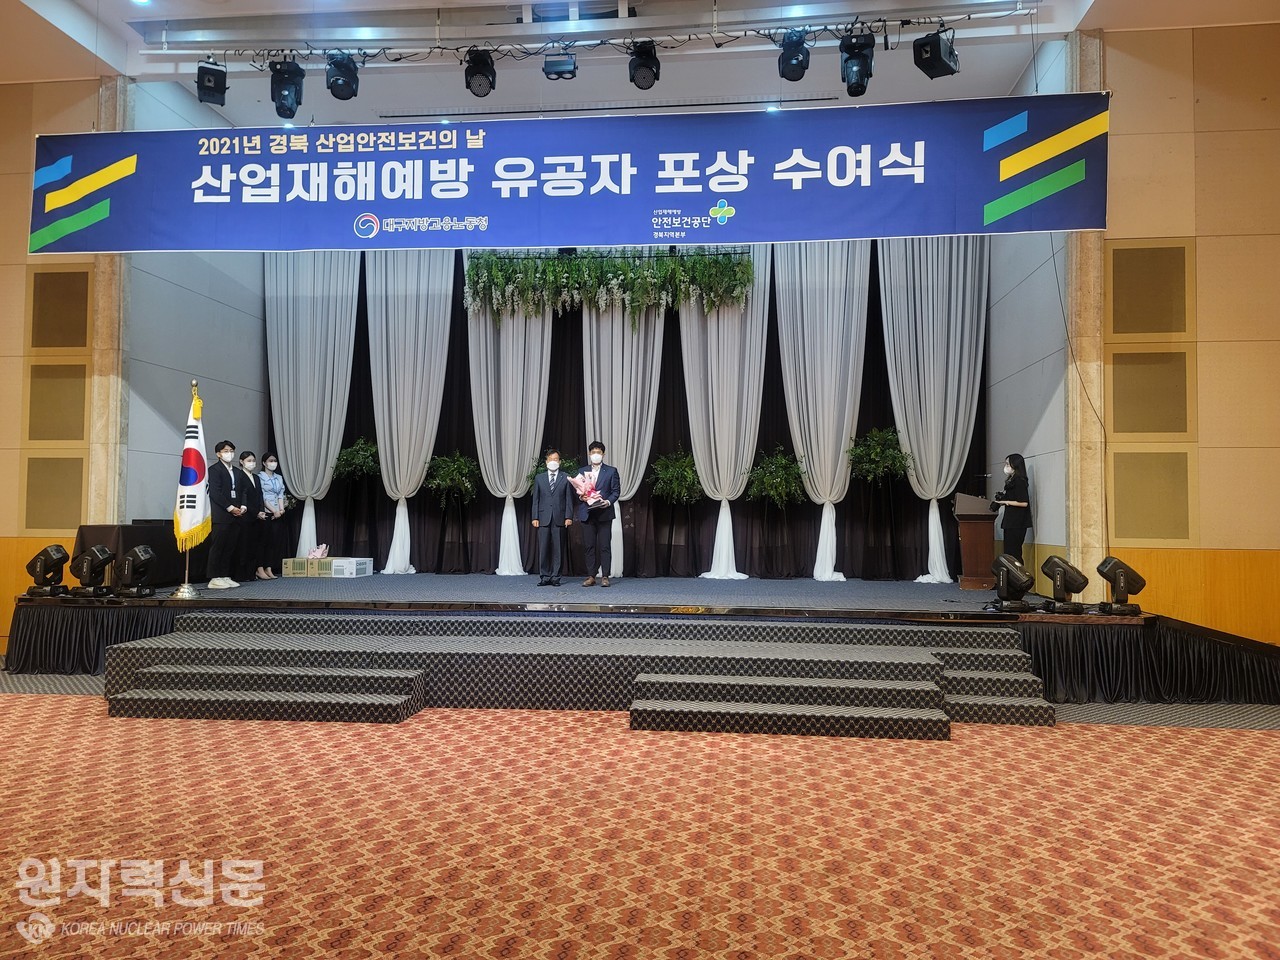 한국원자력환경공단은 고용노동부가 주관한 2021년 명예산업안전감독관 수범사례 발표대회에서 장려상을 받았다.